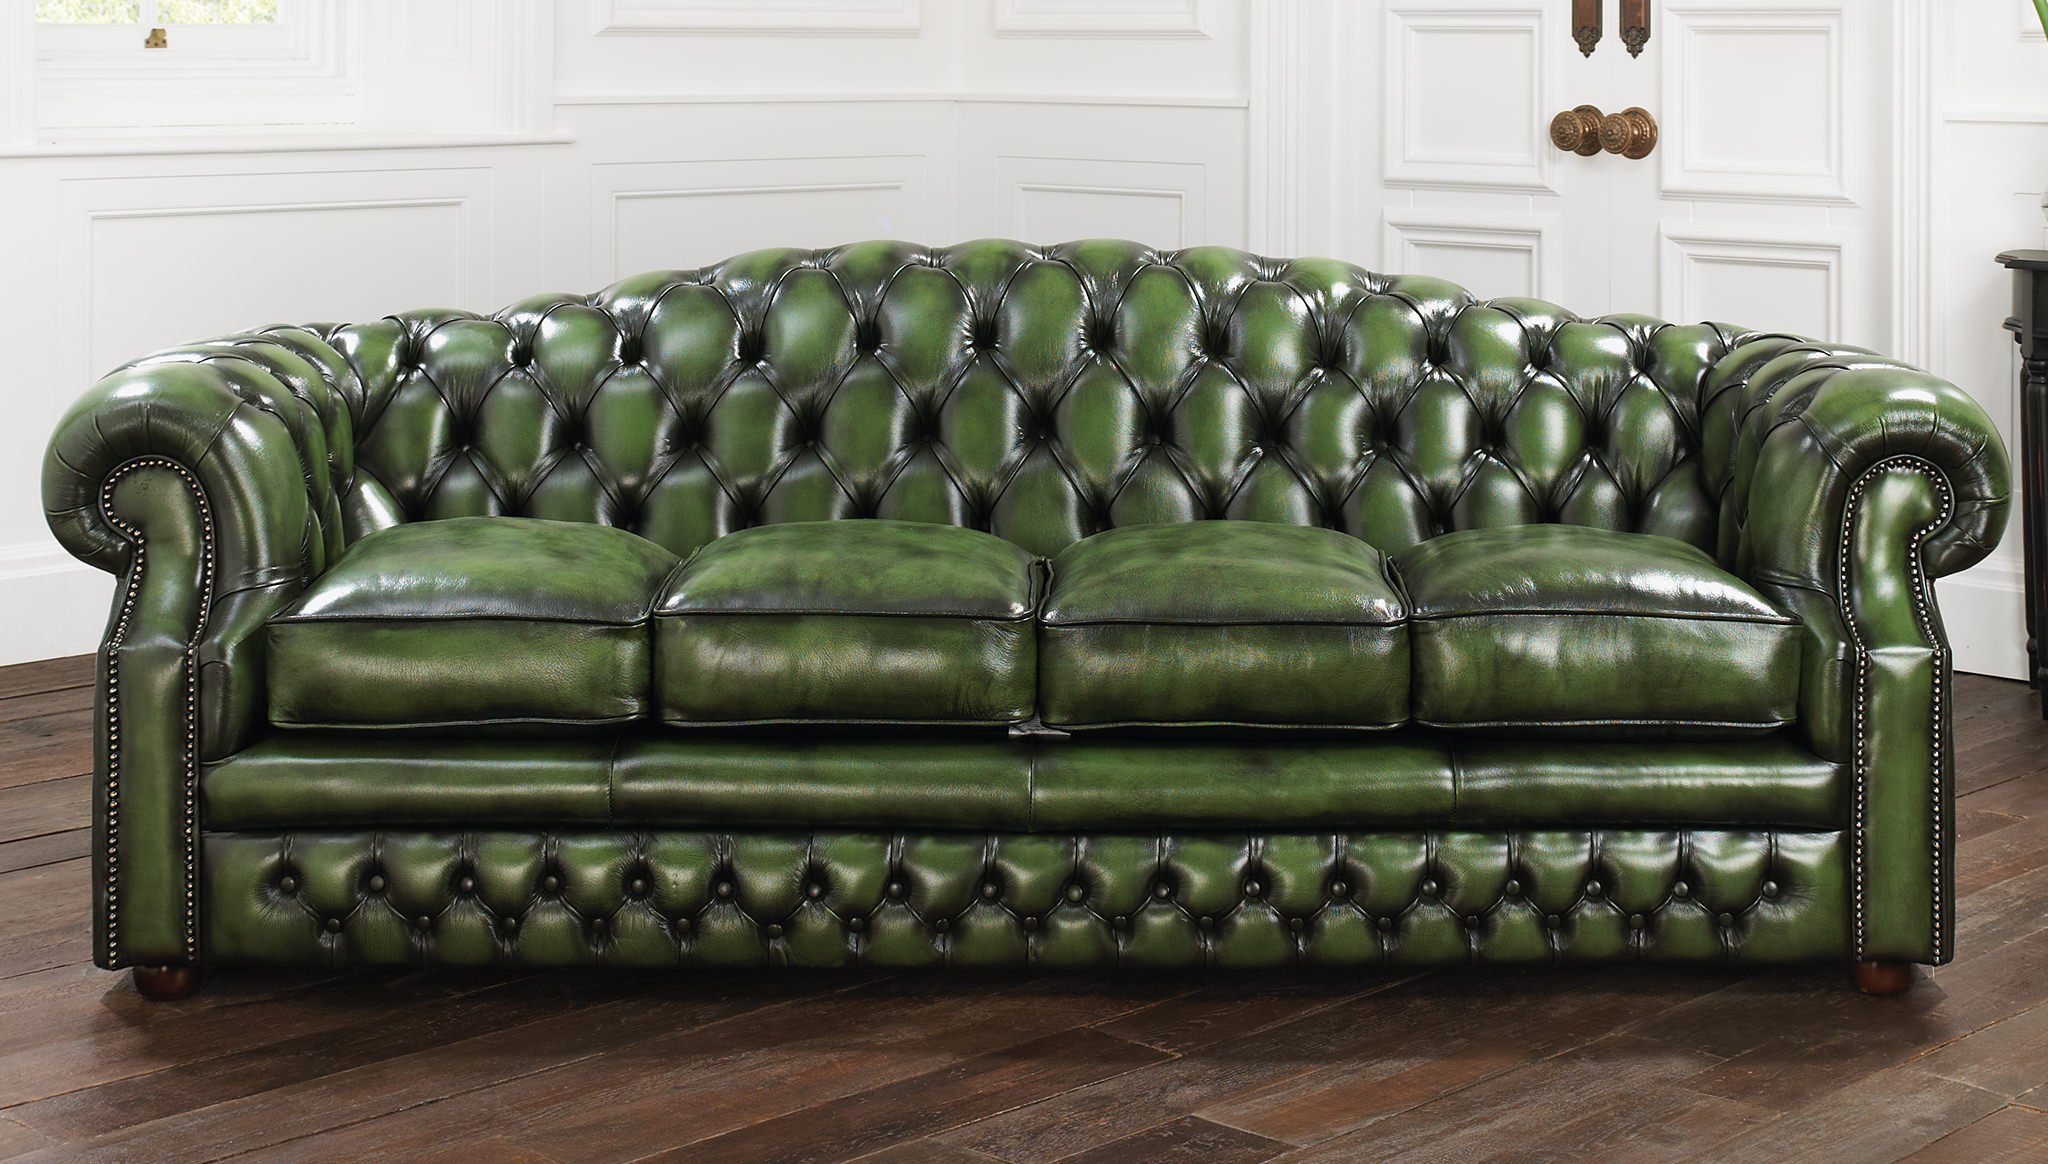 Зеленый диван с обивкой из кожи